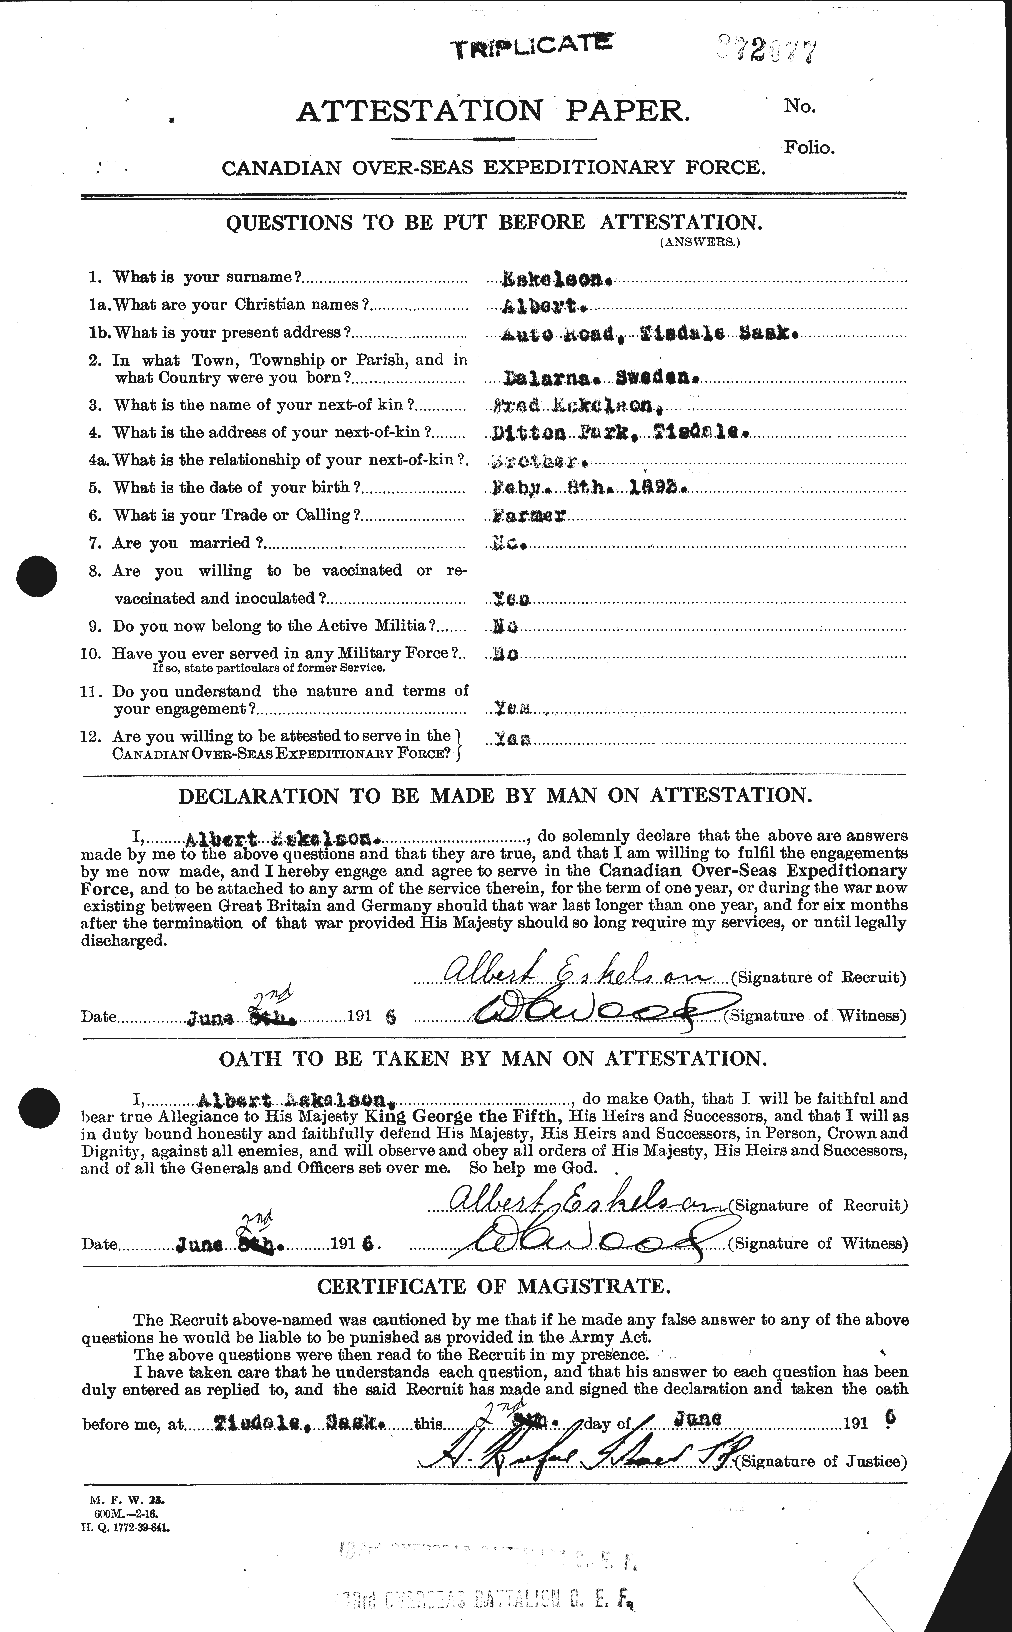 Dossiers du Personnel de la Première Guerre mondiale - CEC 316581a